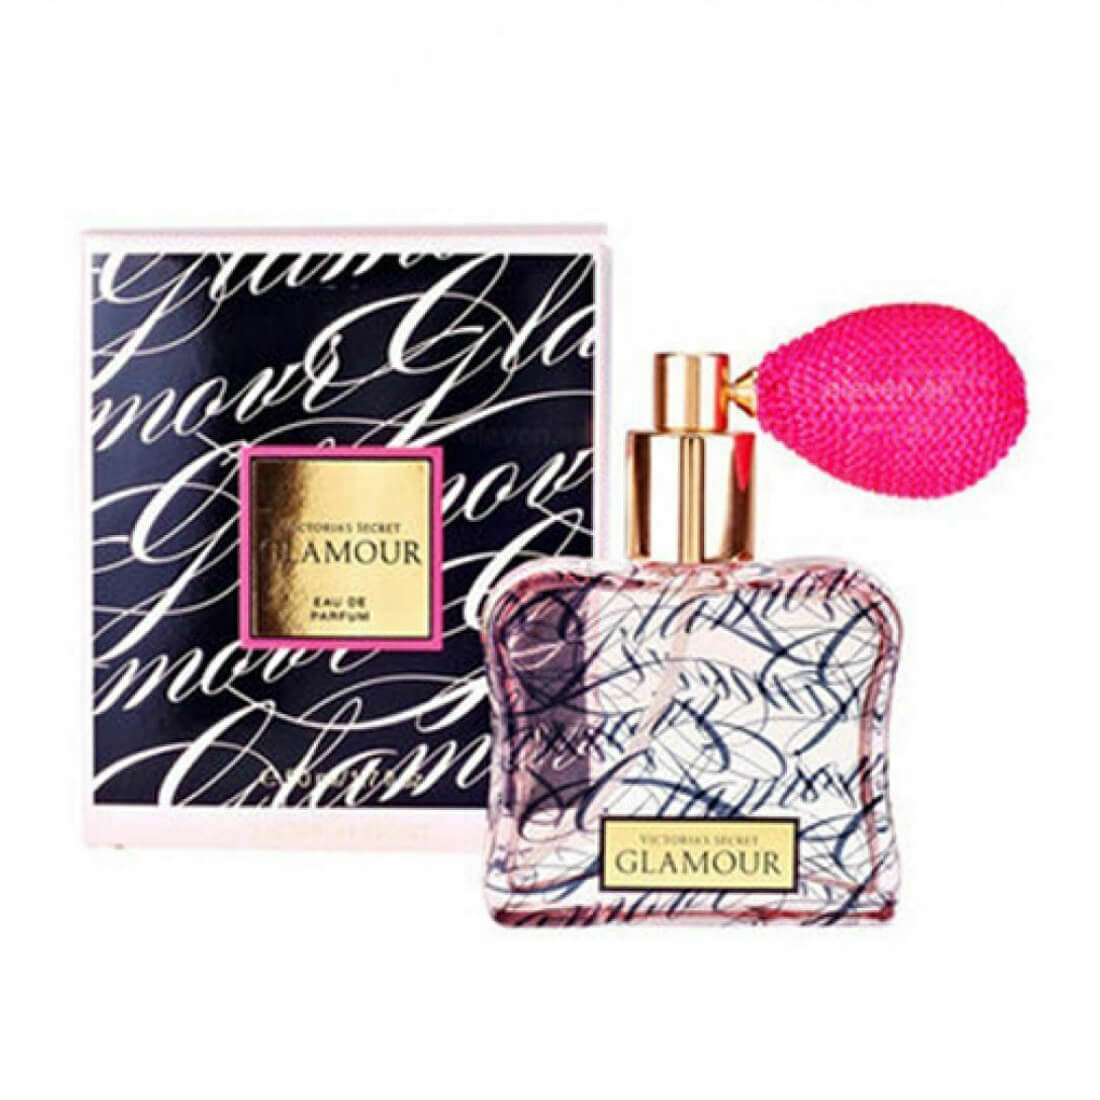 Victoria's Secret Glamour Eau De Perfume - 50ml